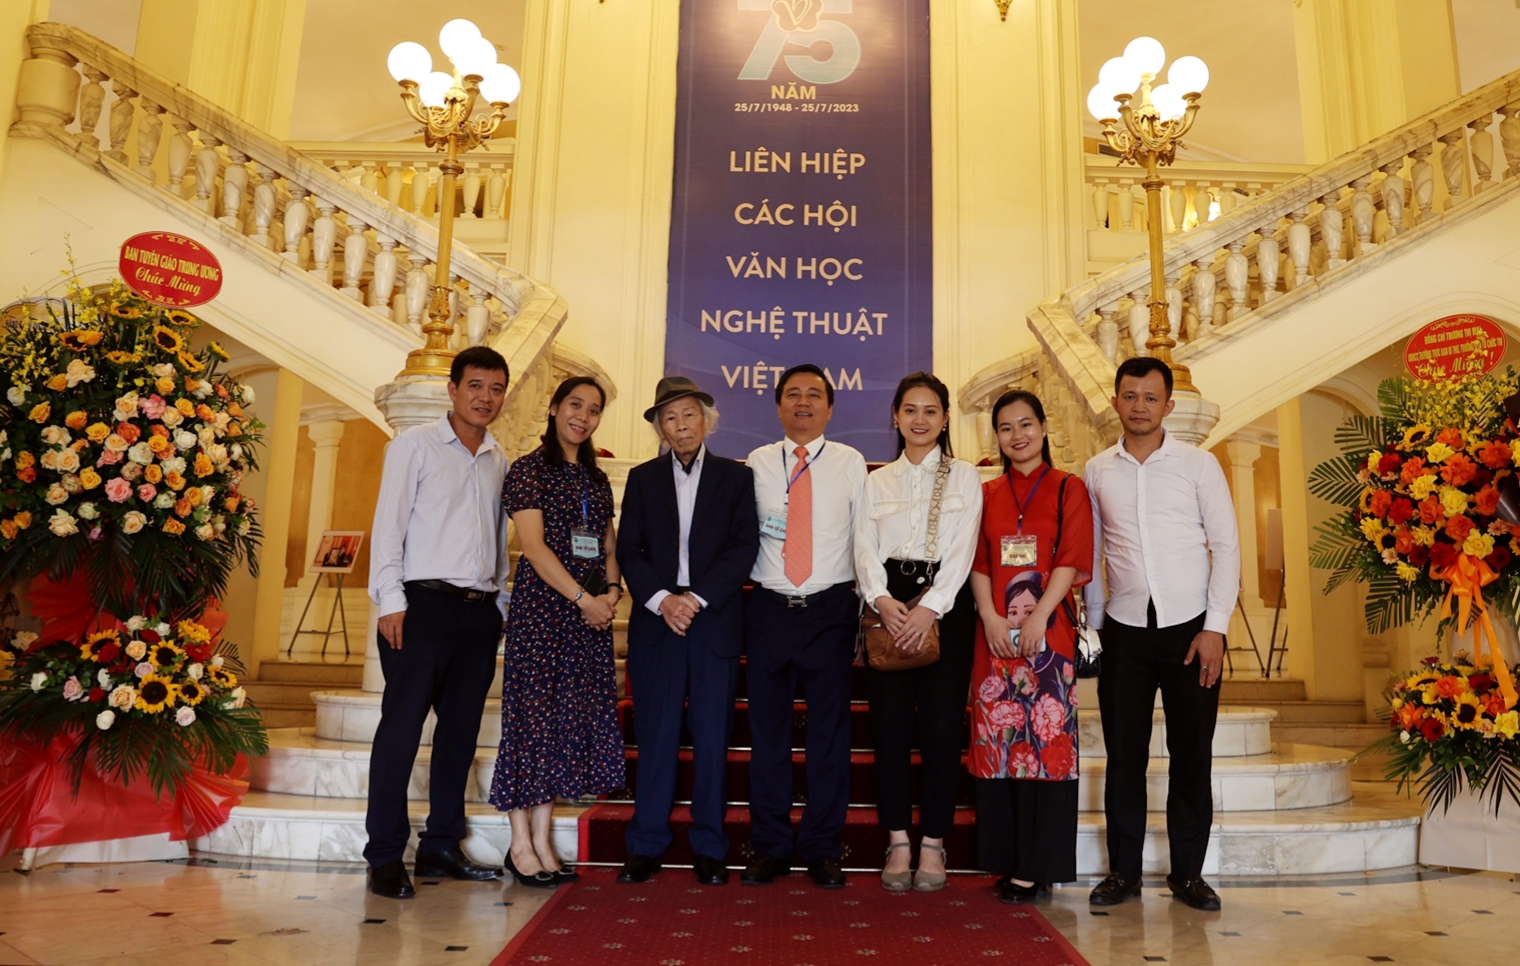 (Ảnh) Lễ kỷ niệm 75 năm thành lập Liên hiệp các Hội Văn học nghệ thuật Việt Nam - 19